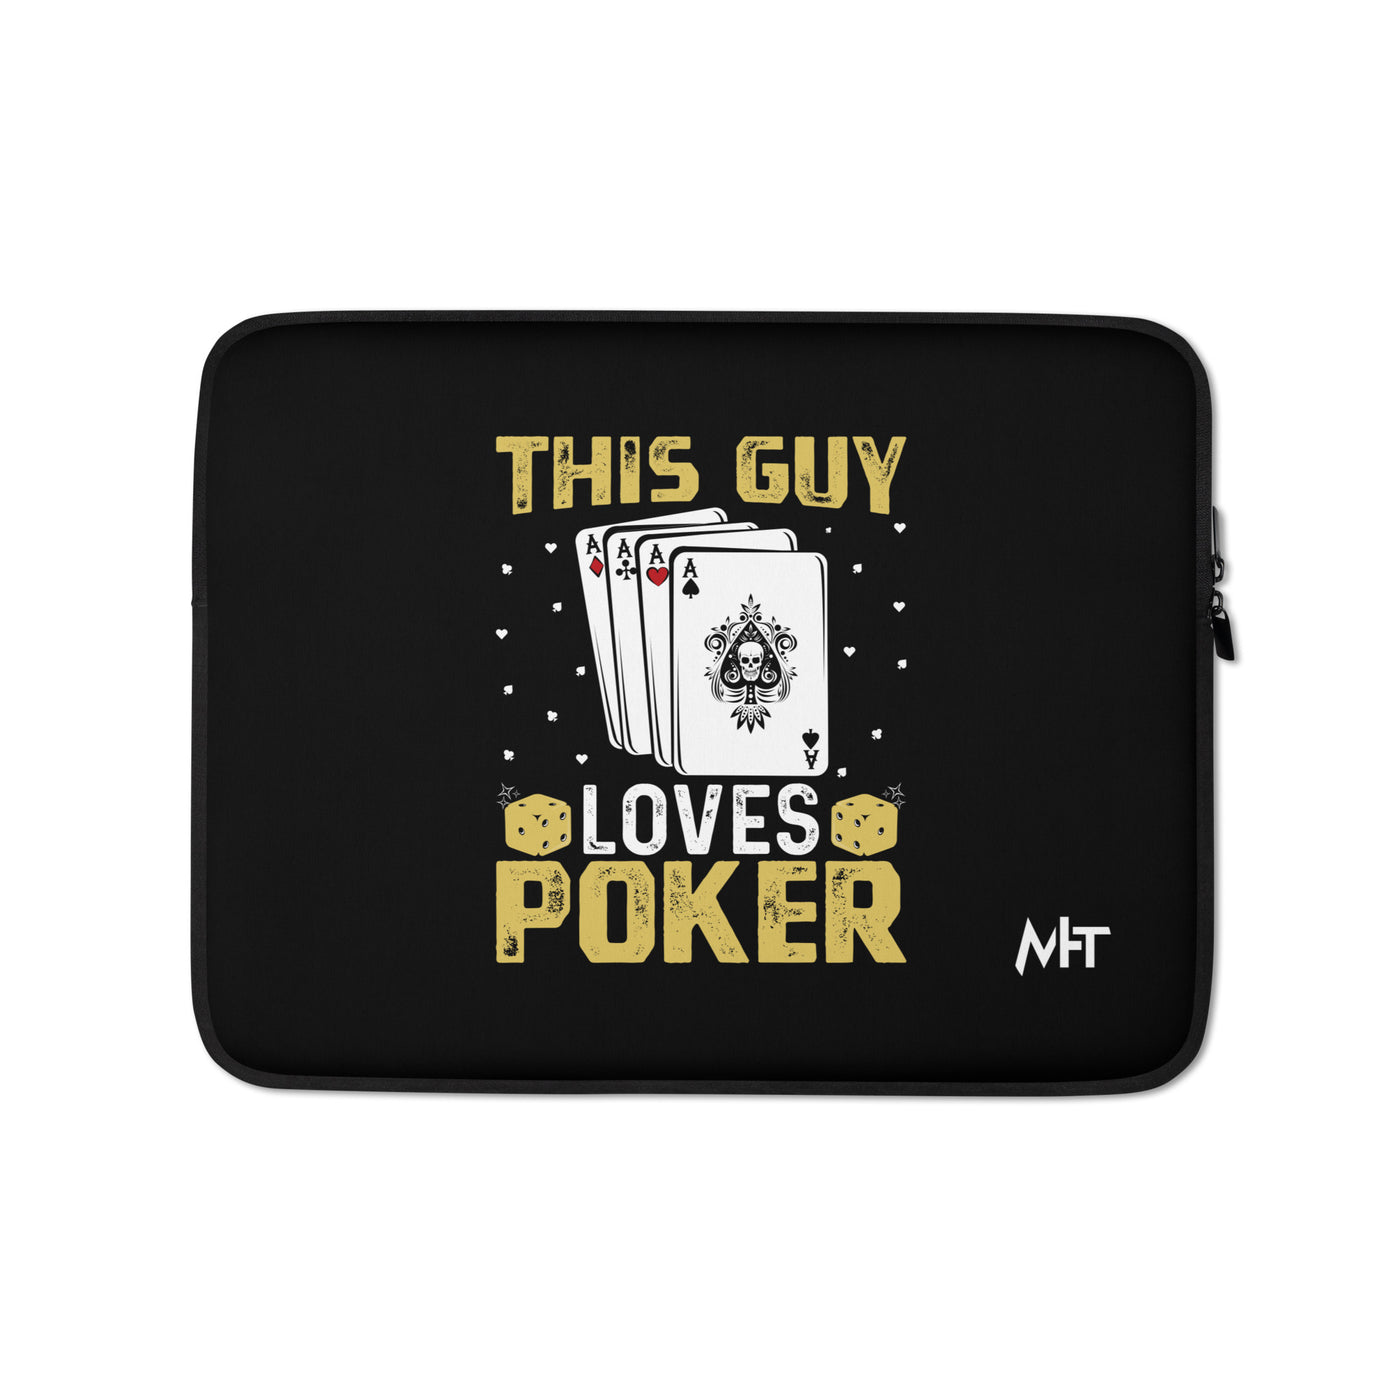 This Guy Loves Poker - Laptop Sleeve